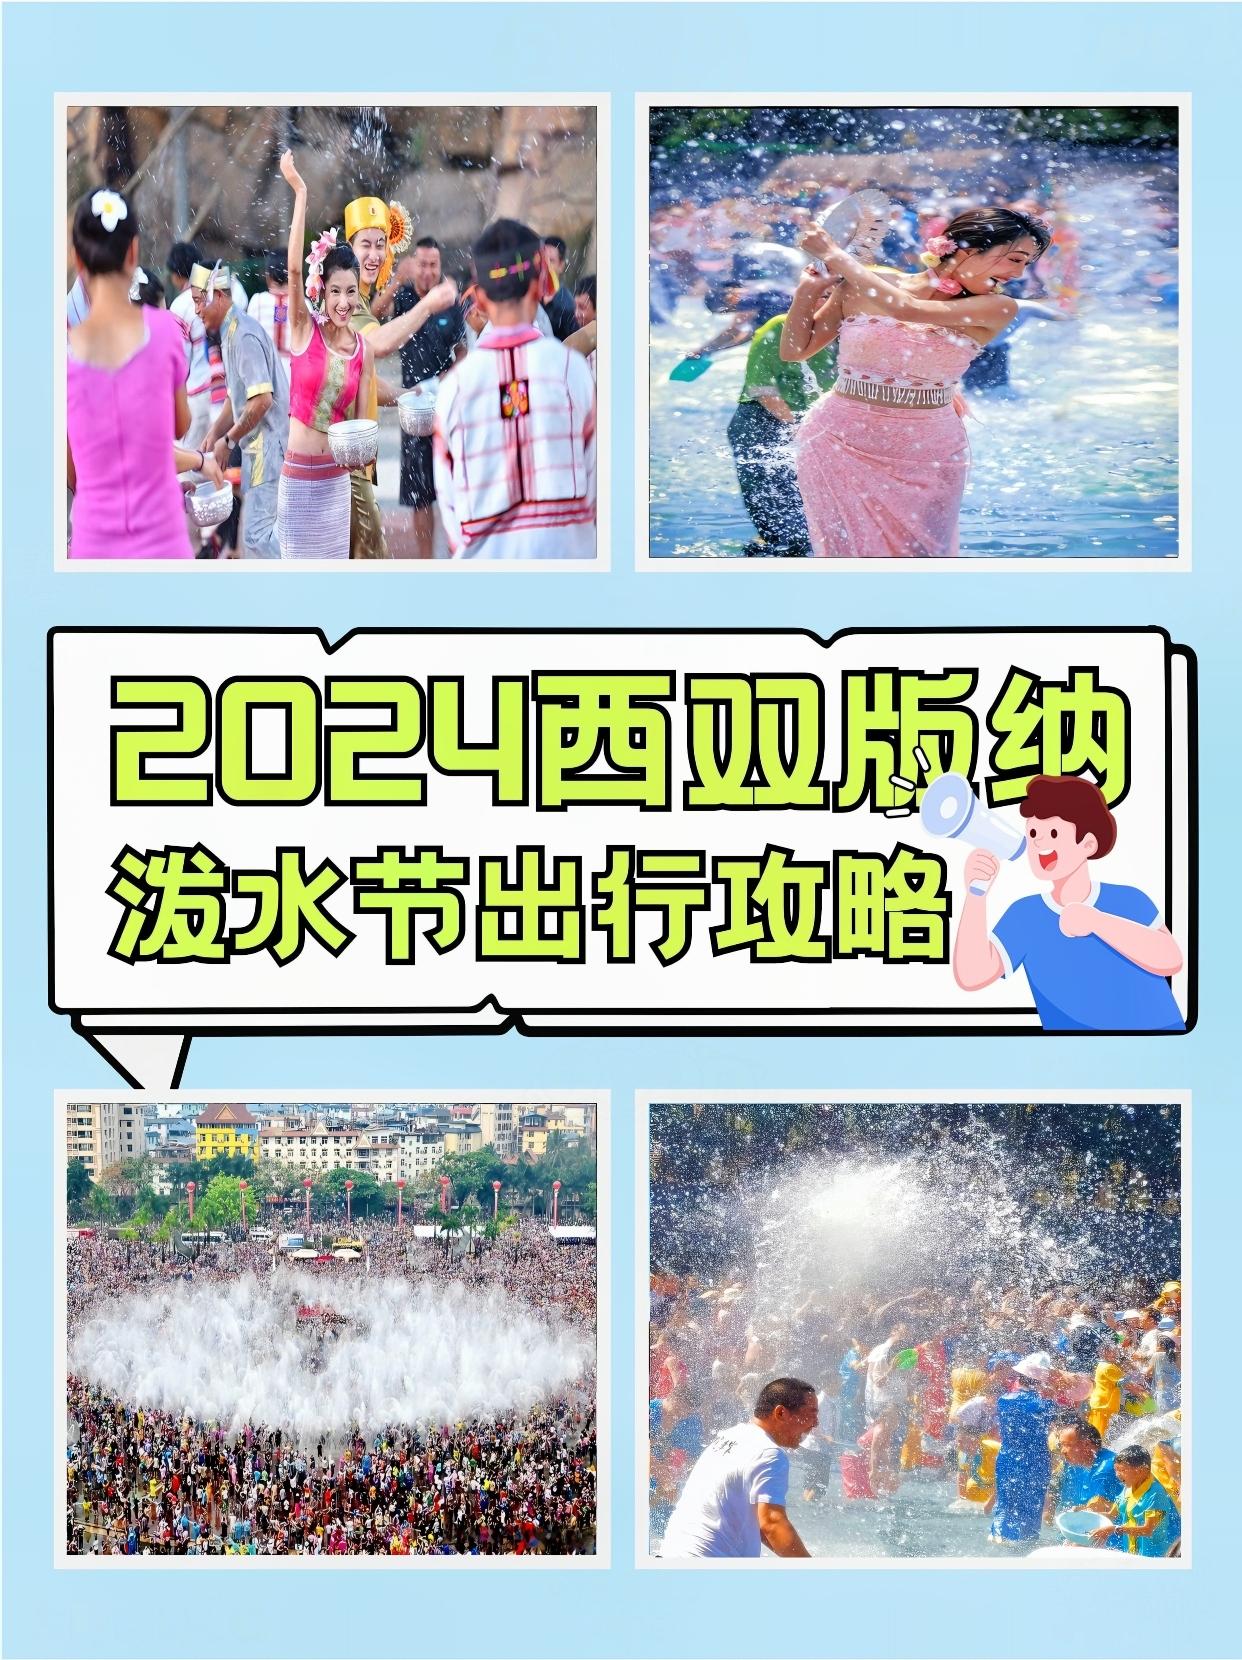 游玩云南 的想法: 2024西双版纳泼水节,这样玩才尽兴!